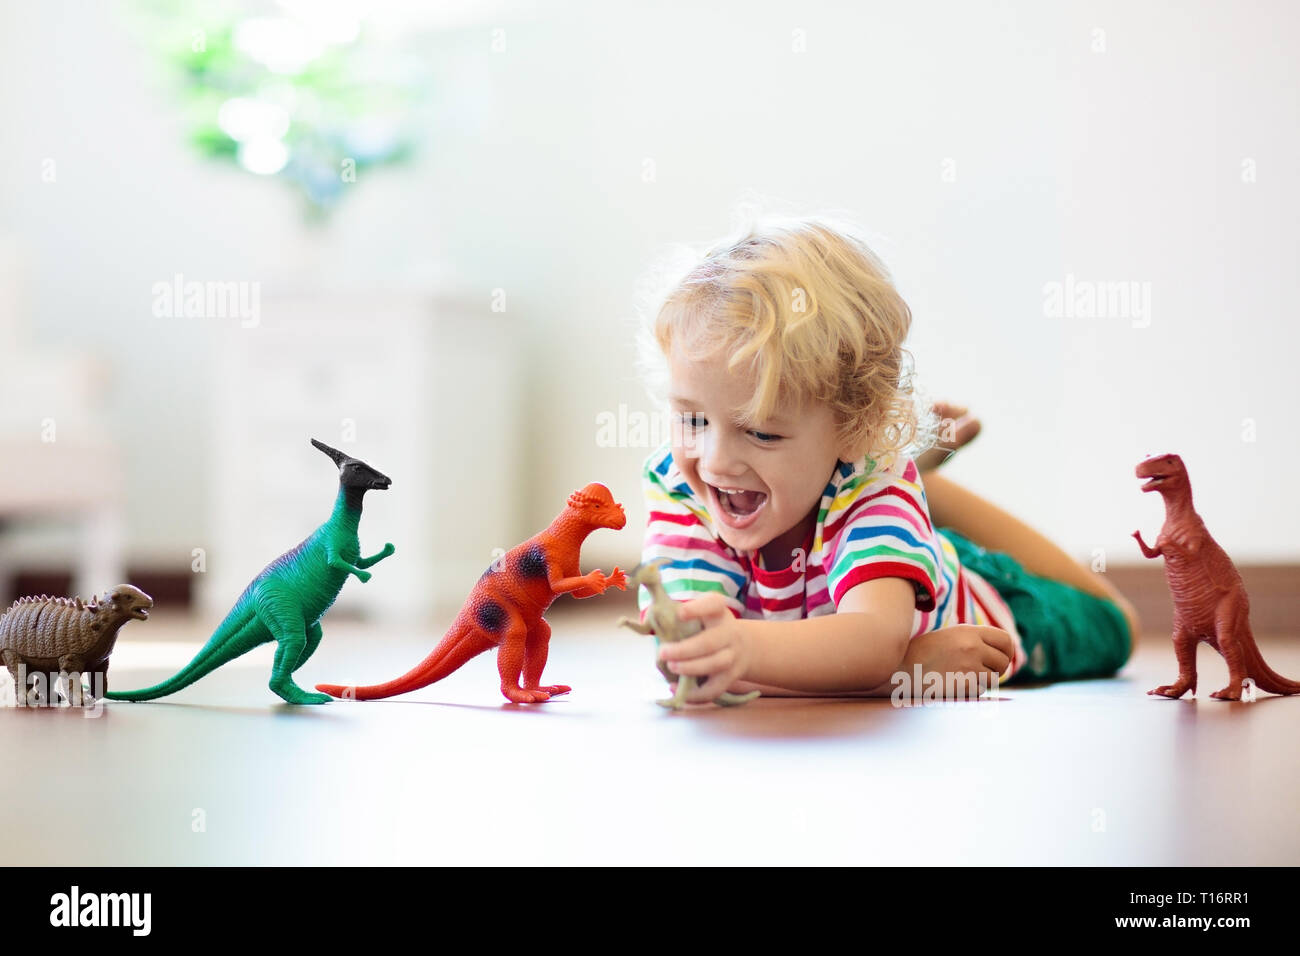 Bambini che giocano con variopinti dinosauri giocattolo. Giocattoli educativi per i bambini. Little Boy learning fossili e rettili. I bambini giocano con i giocattoli di dinosauri. Evol Foto Stock